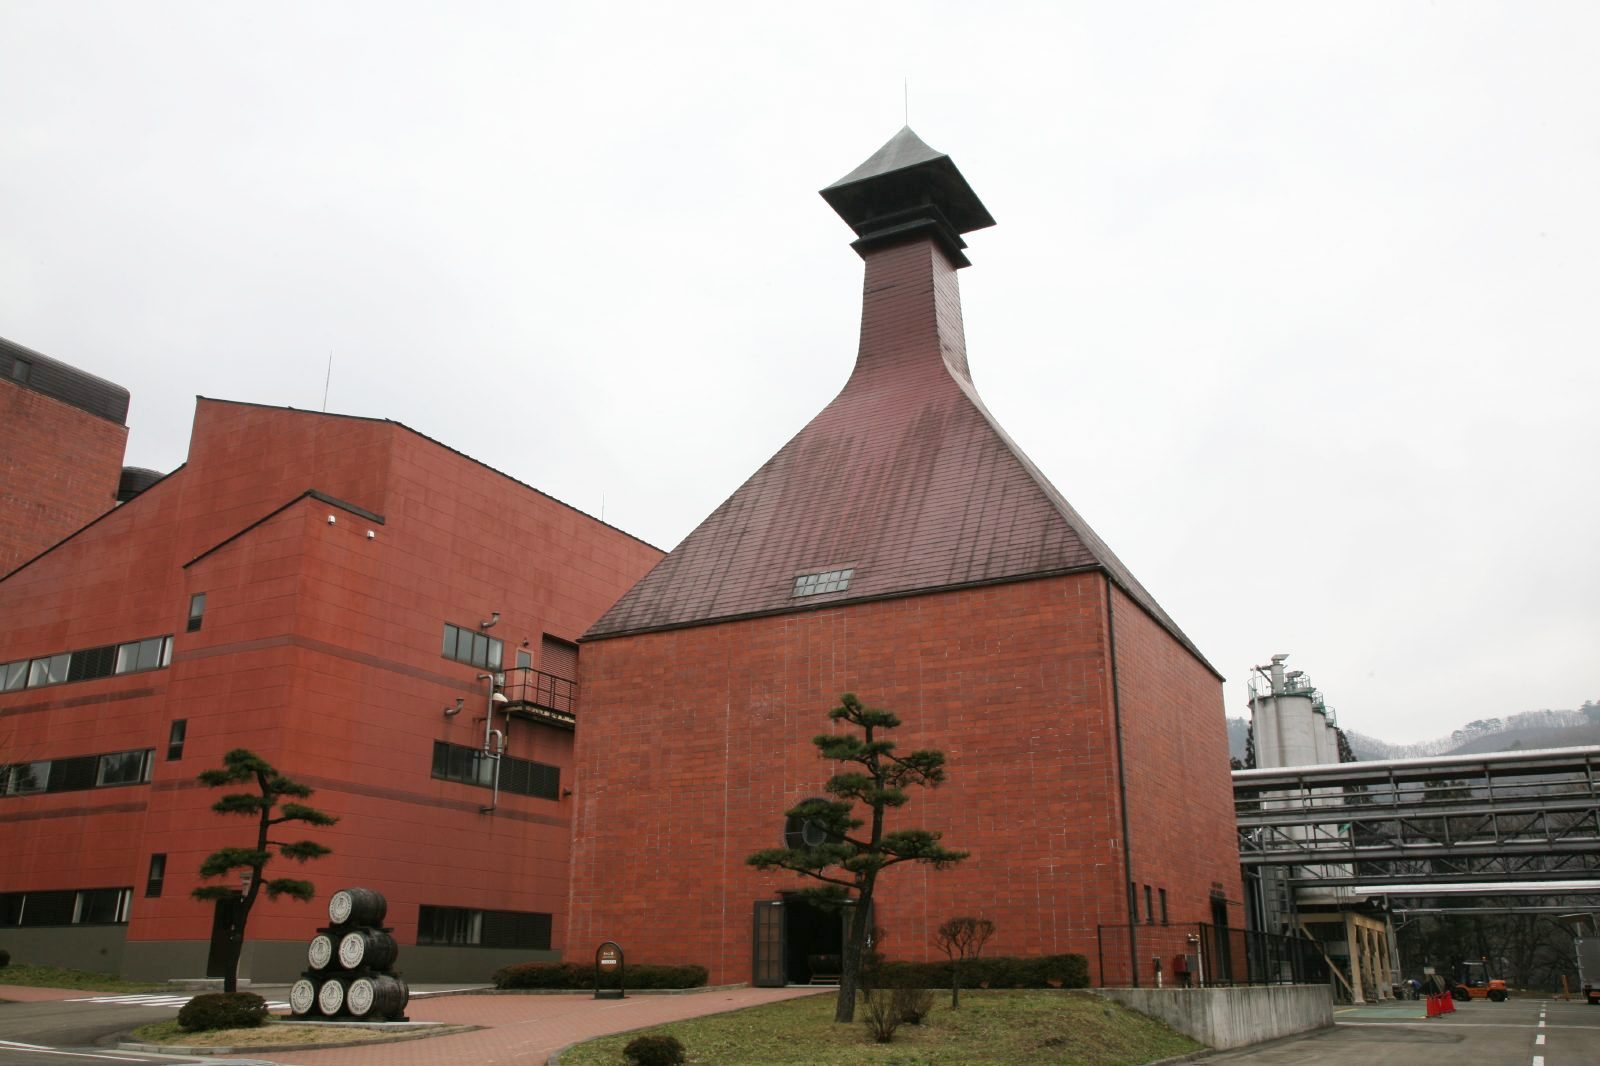 日本のウイスキー蒸溜所